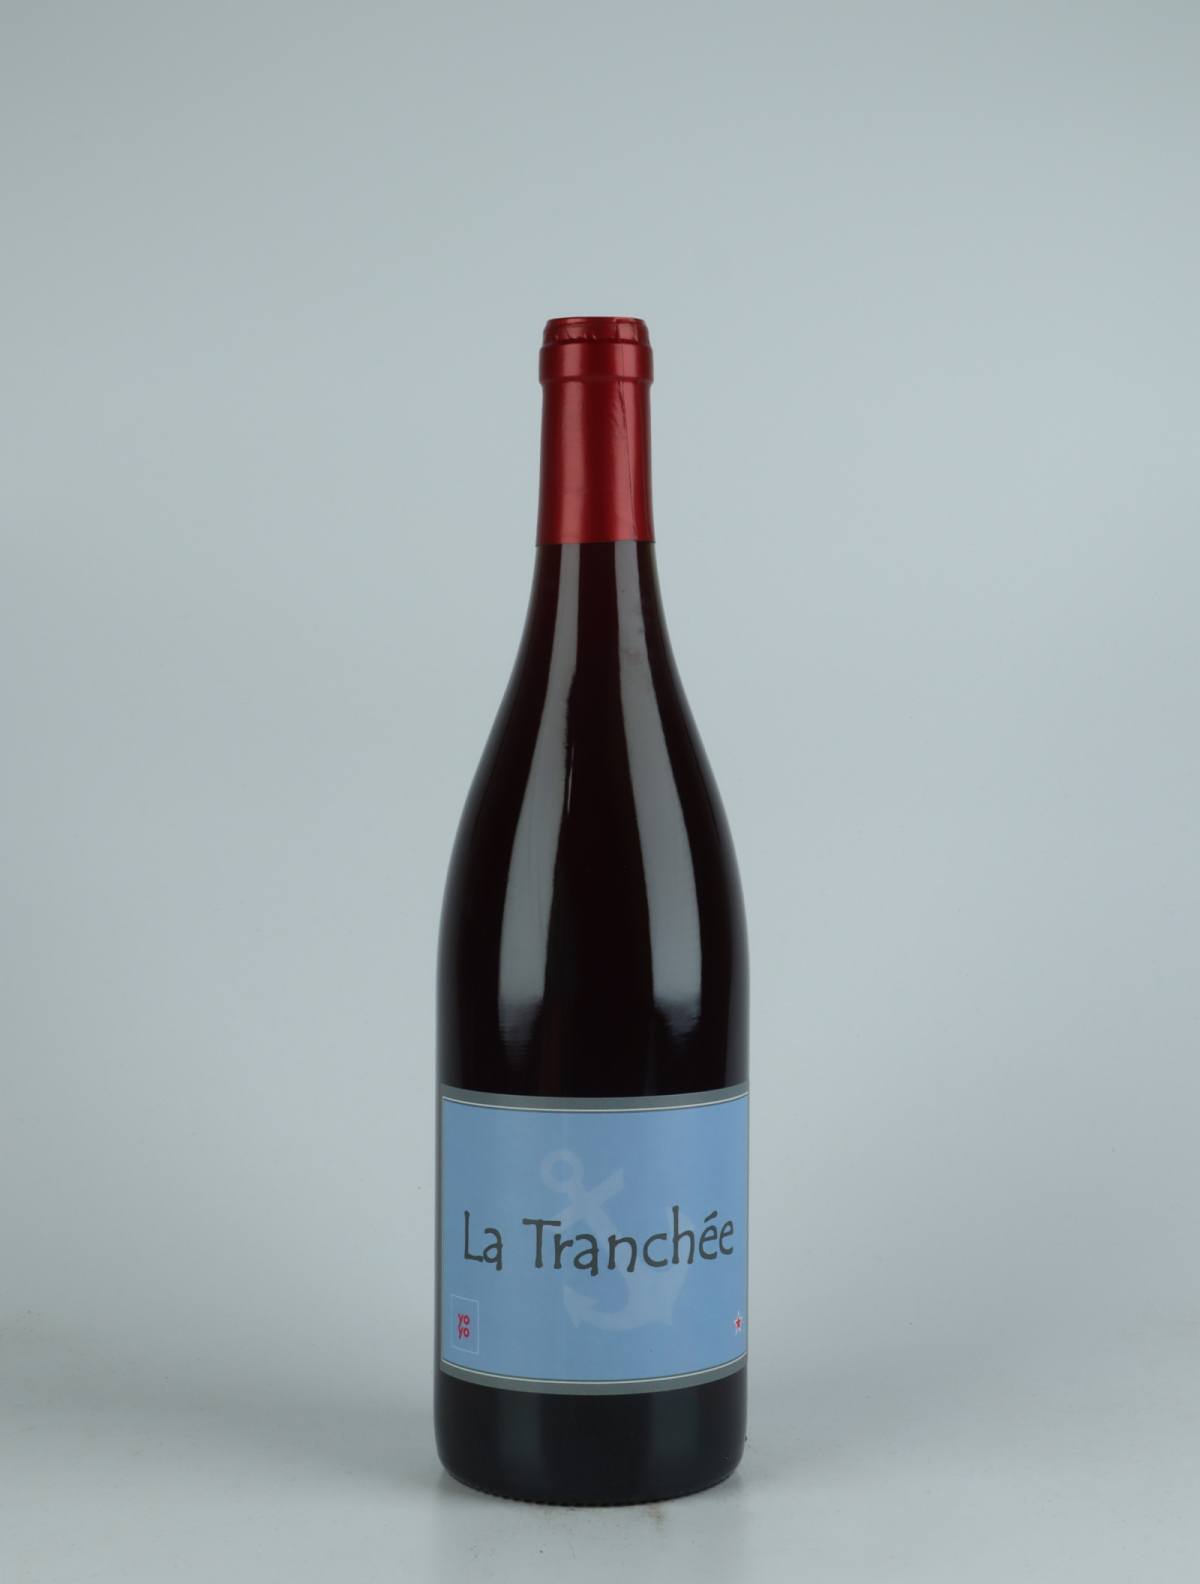 En flaske 2021 La Tranchée Rødvin fra Domaine Yoyo, Rousillon i Frankrig